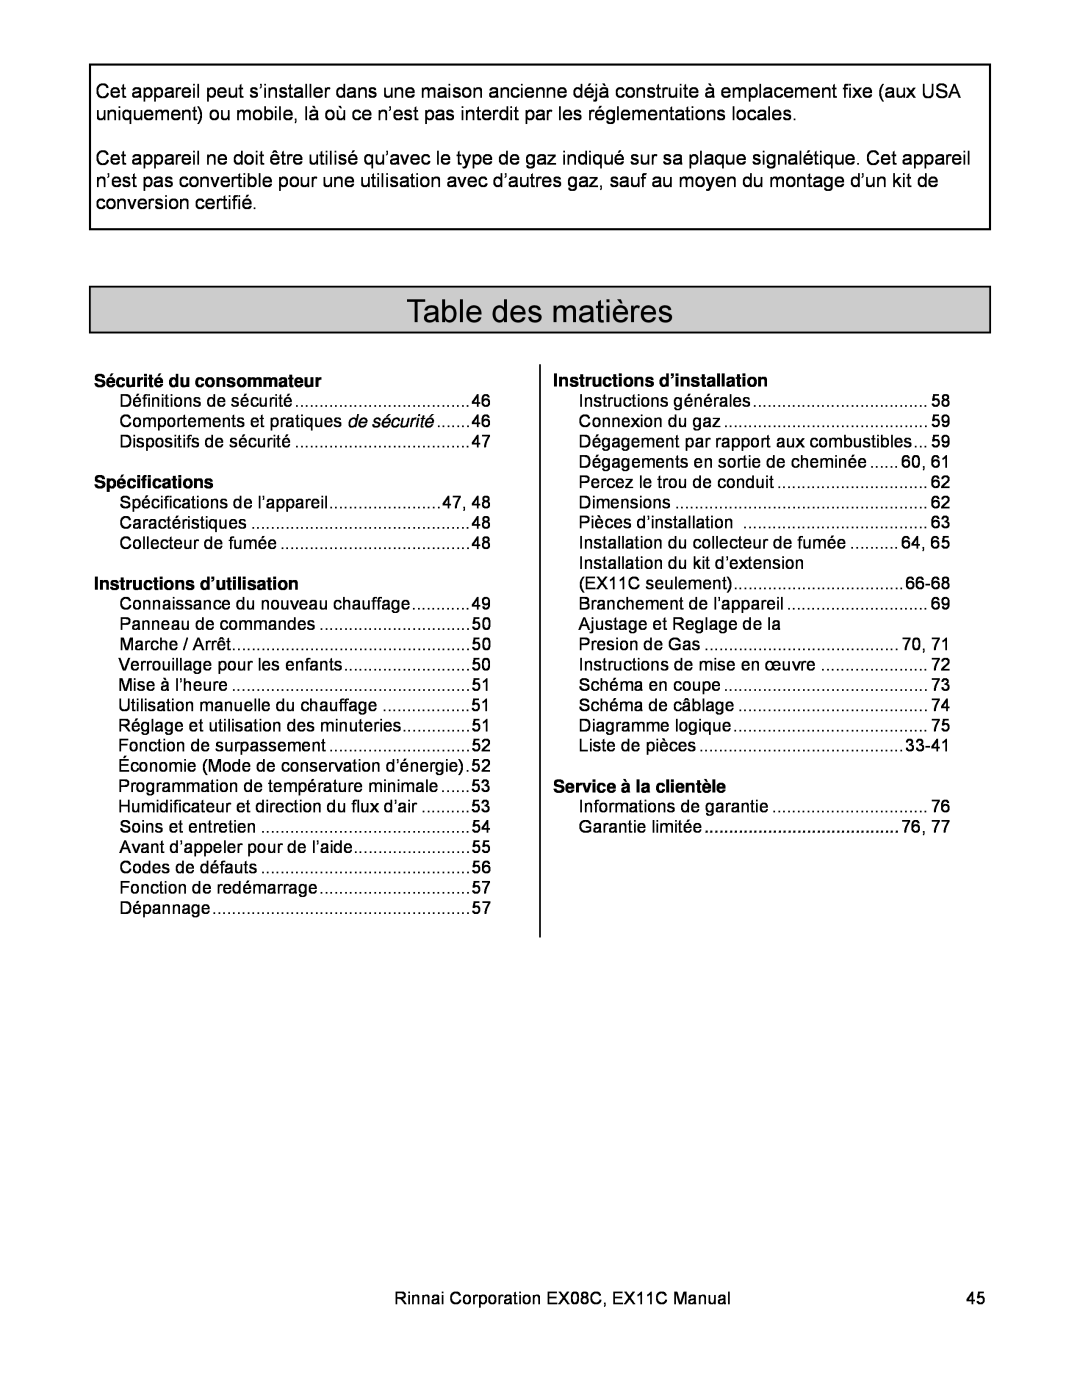 Rinnai EX08C (RHFE-202FTA) Table des matières, Sécurité du consommateur, Spécifications, Instructions d’utilisation 